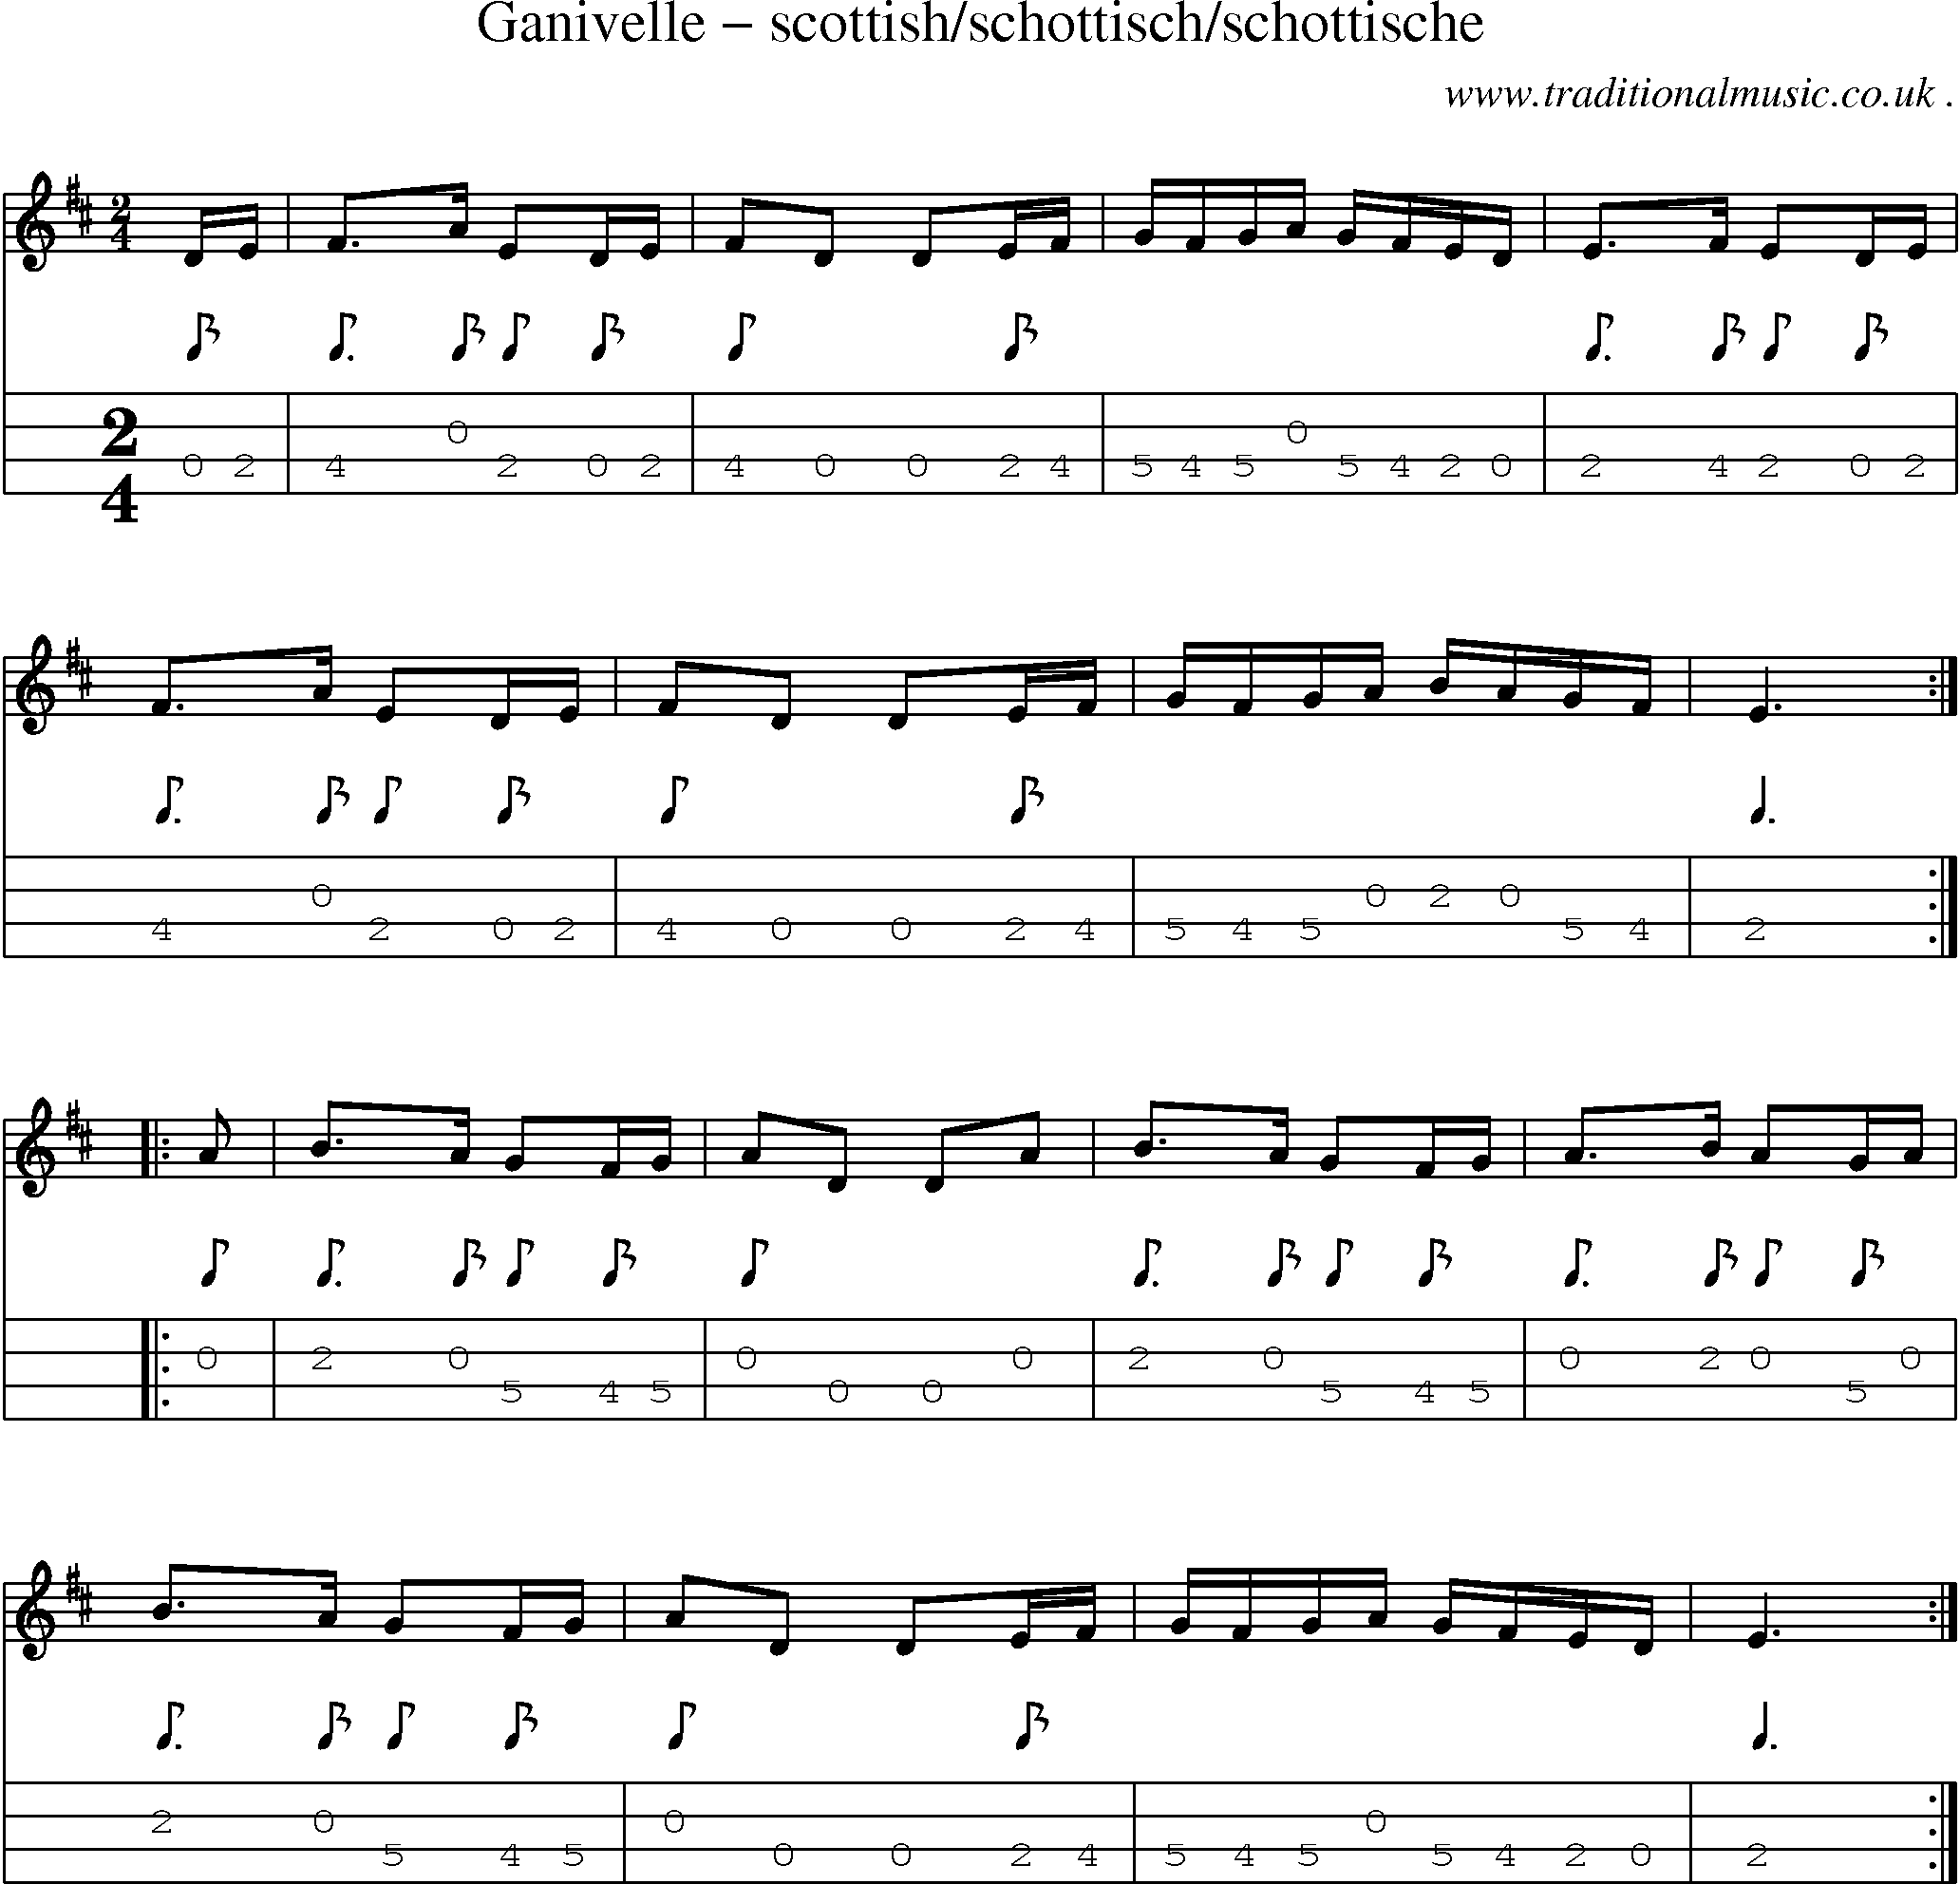 Sheet-Music and Mandolin Tabs for Ganivelle Scottishschottischschottische